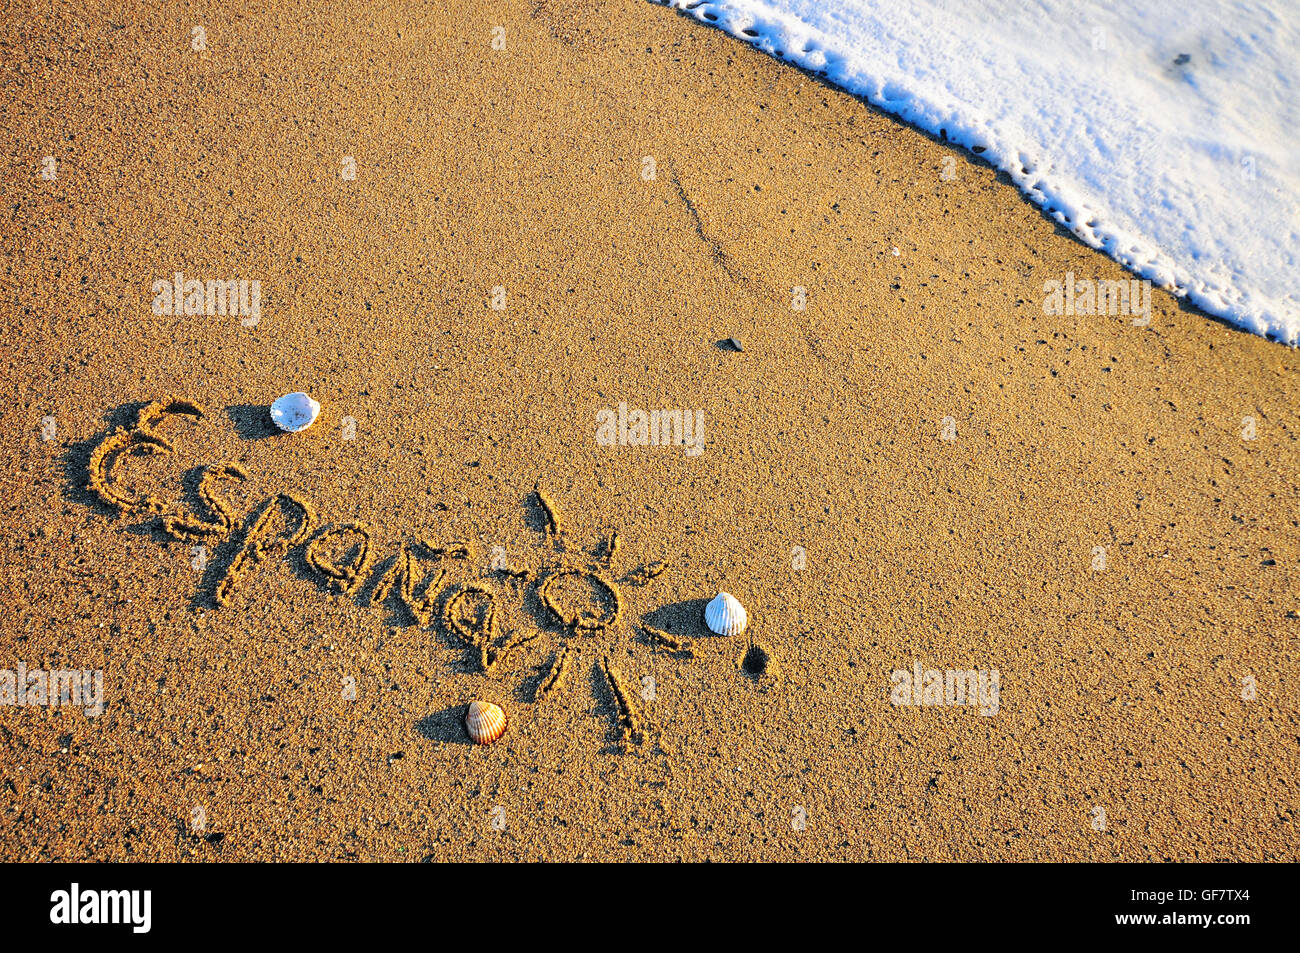 Spain sign on the sand beach Stock Photo